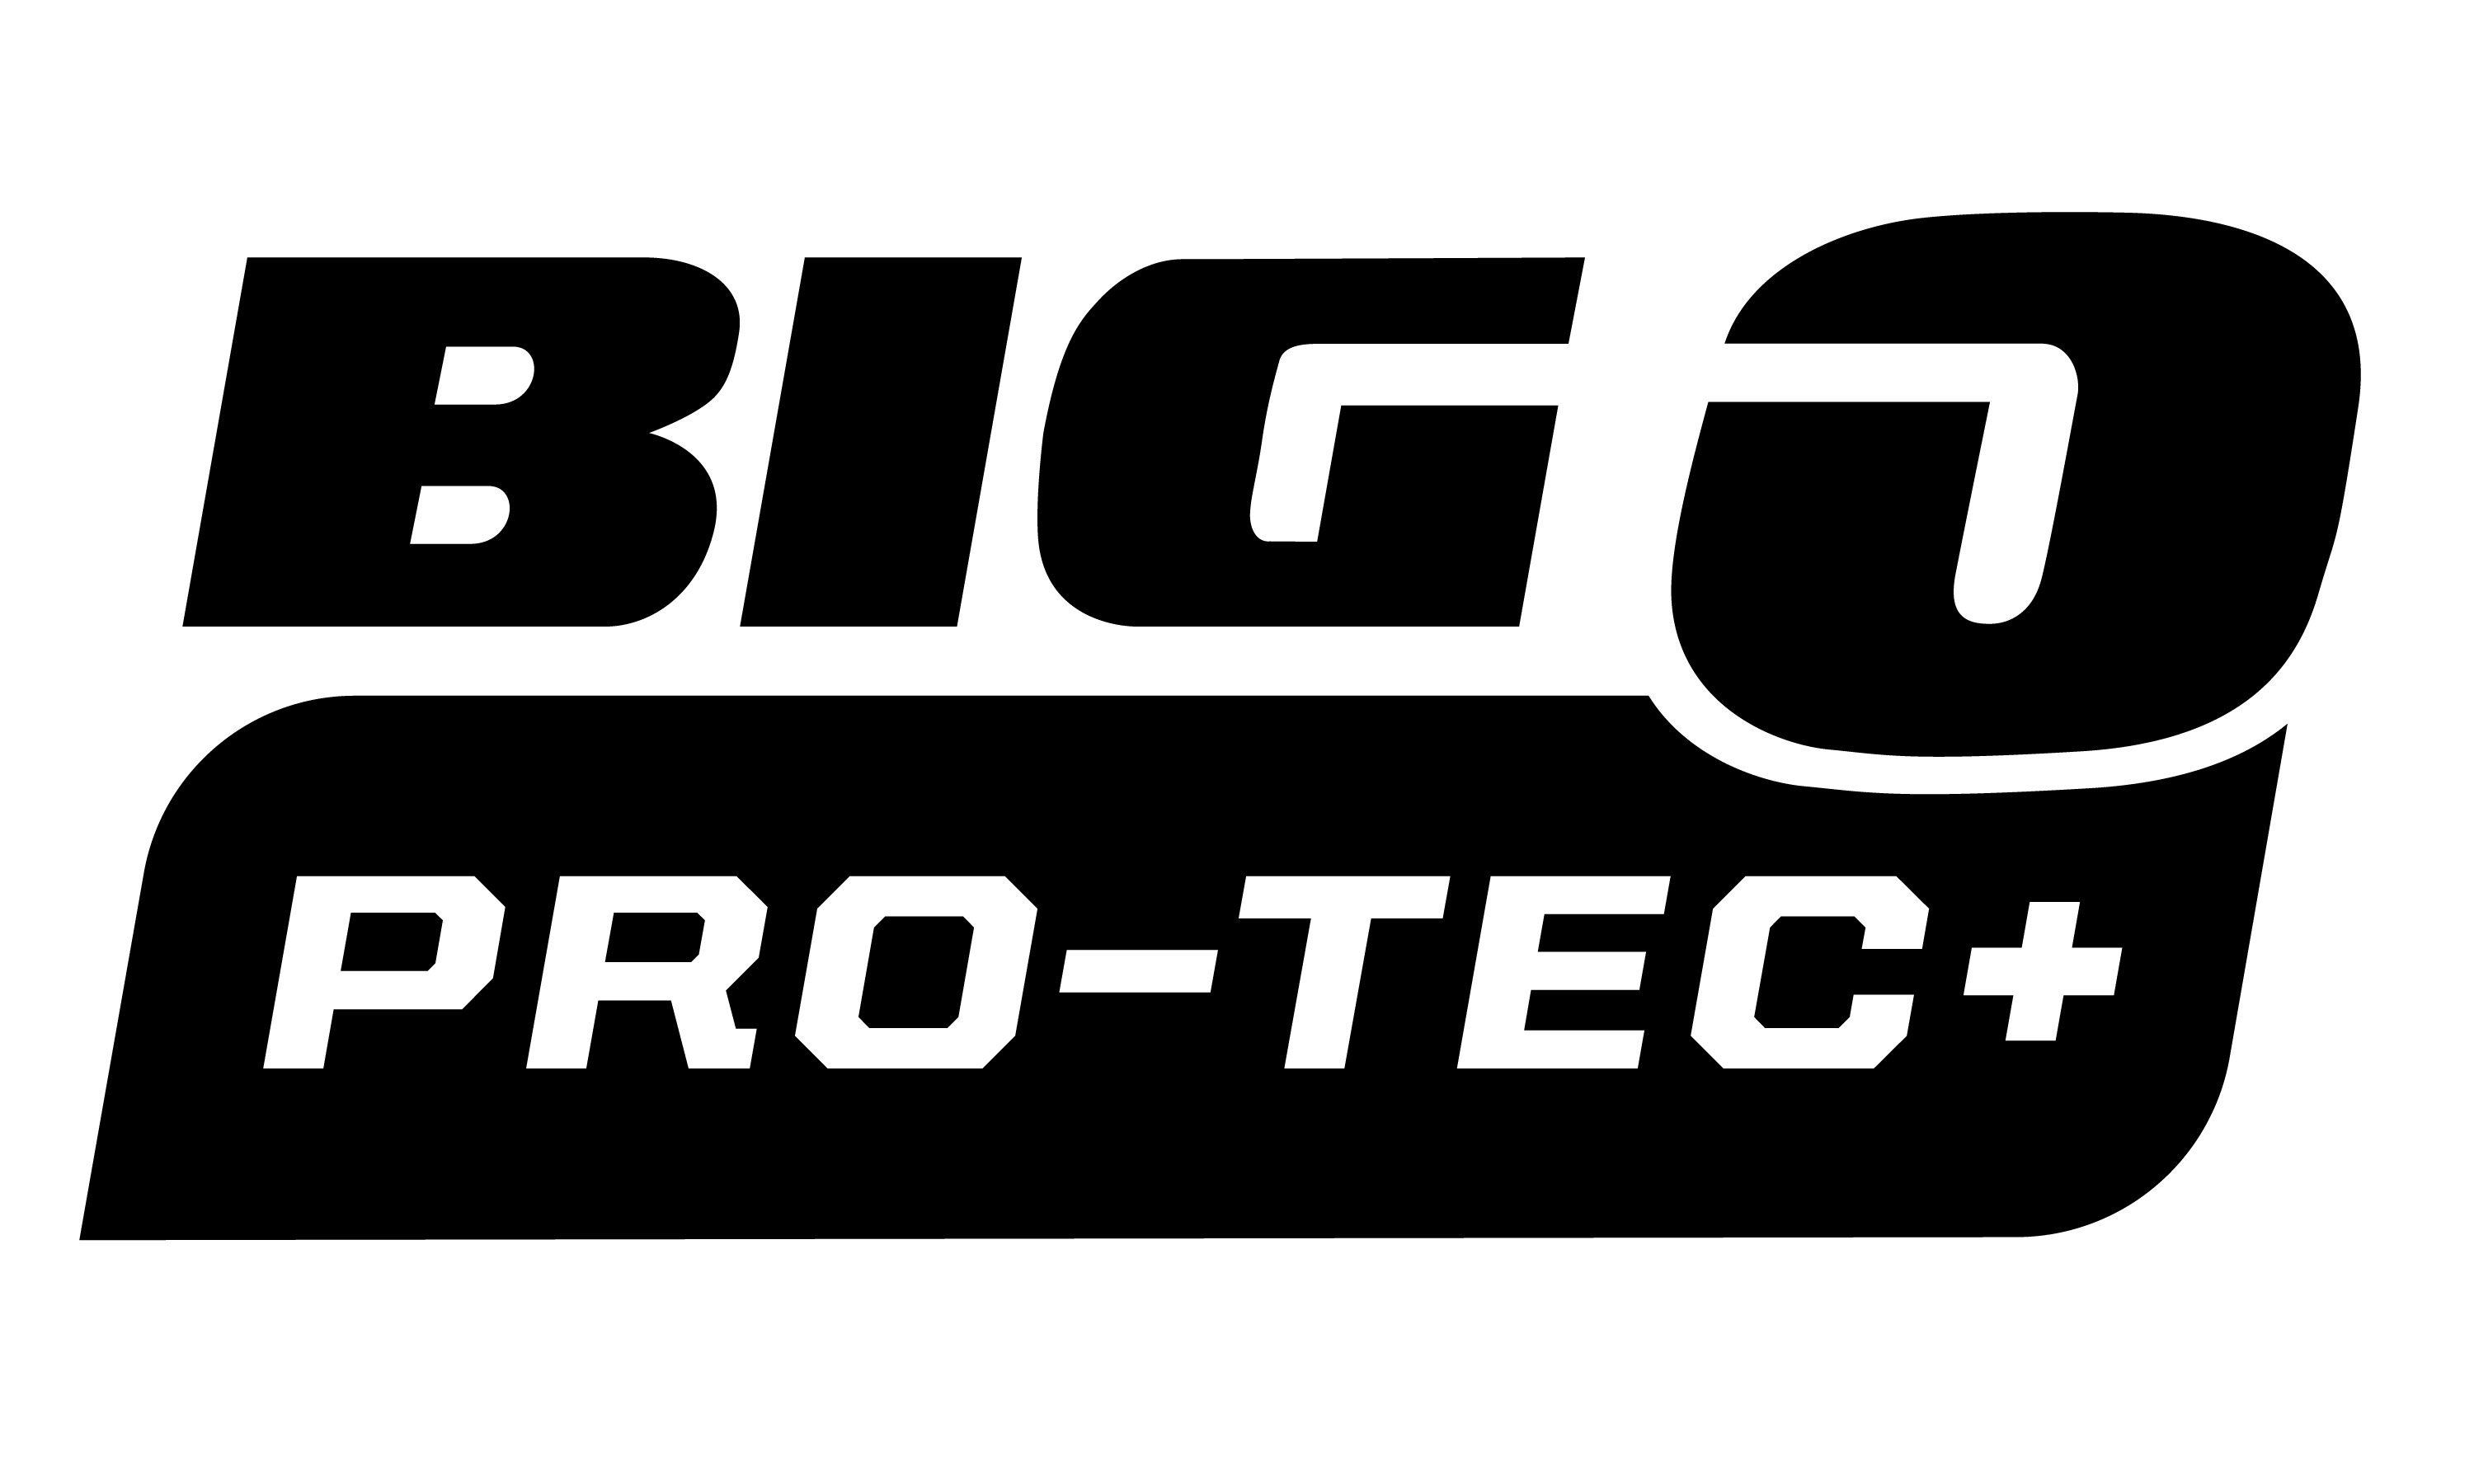  BIG O PRO-TEC+